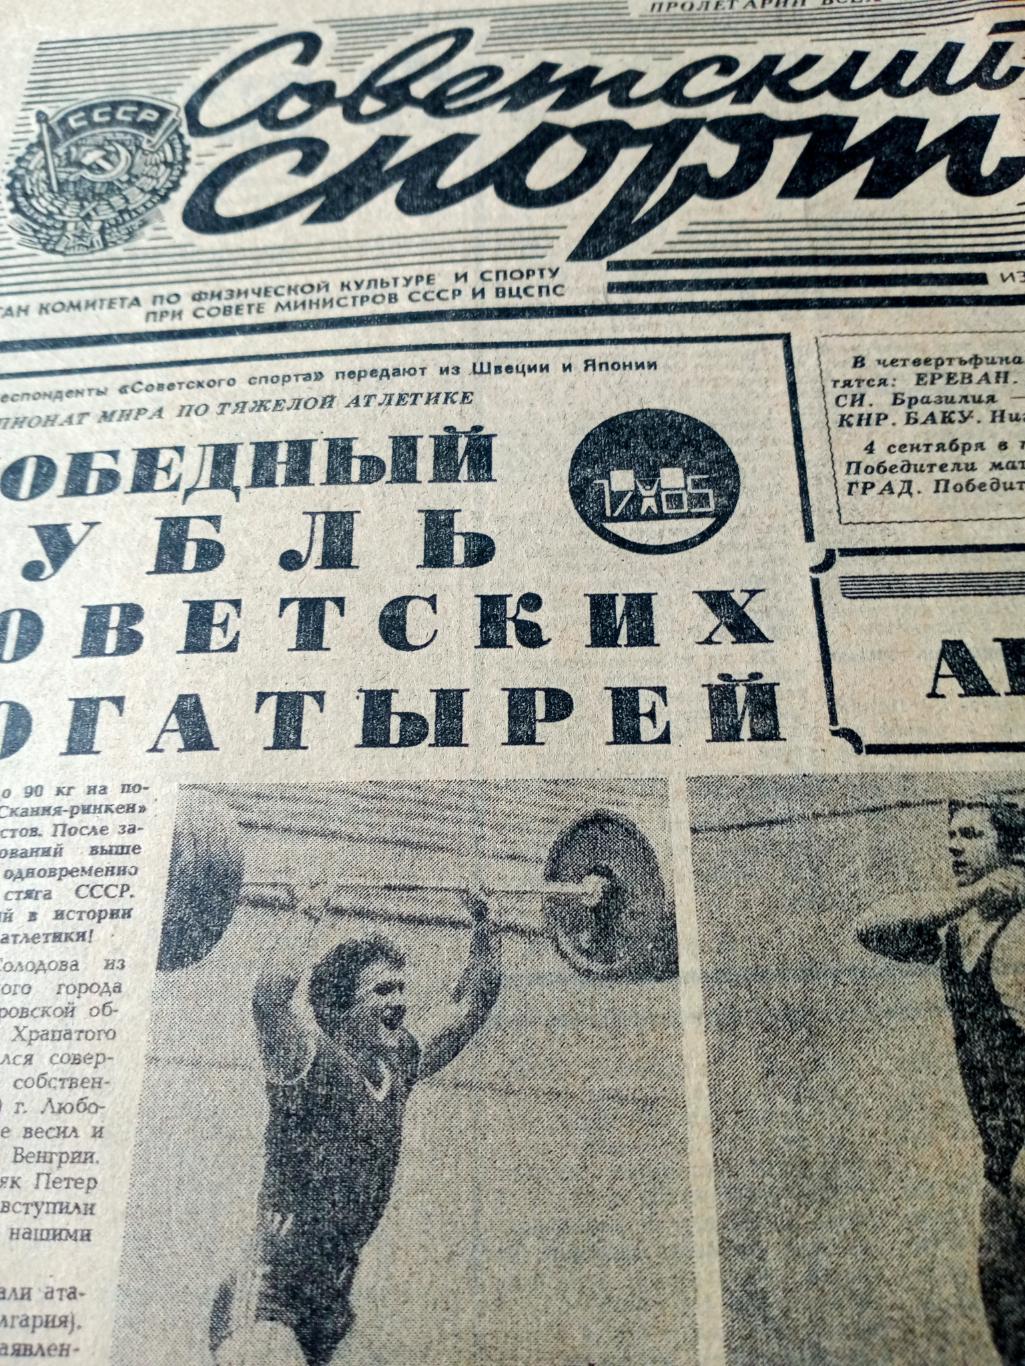 ЧМ по футболу. Юниоры. Советский спорт. 1985 год. 31 августа